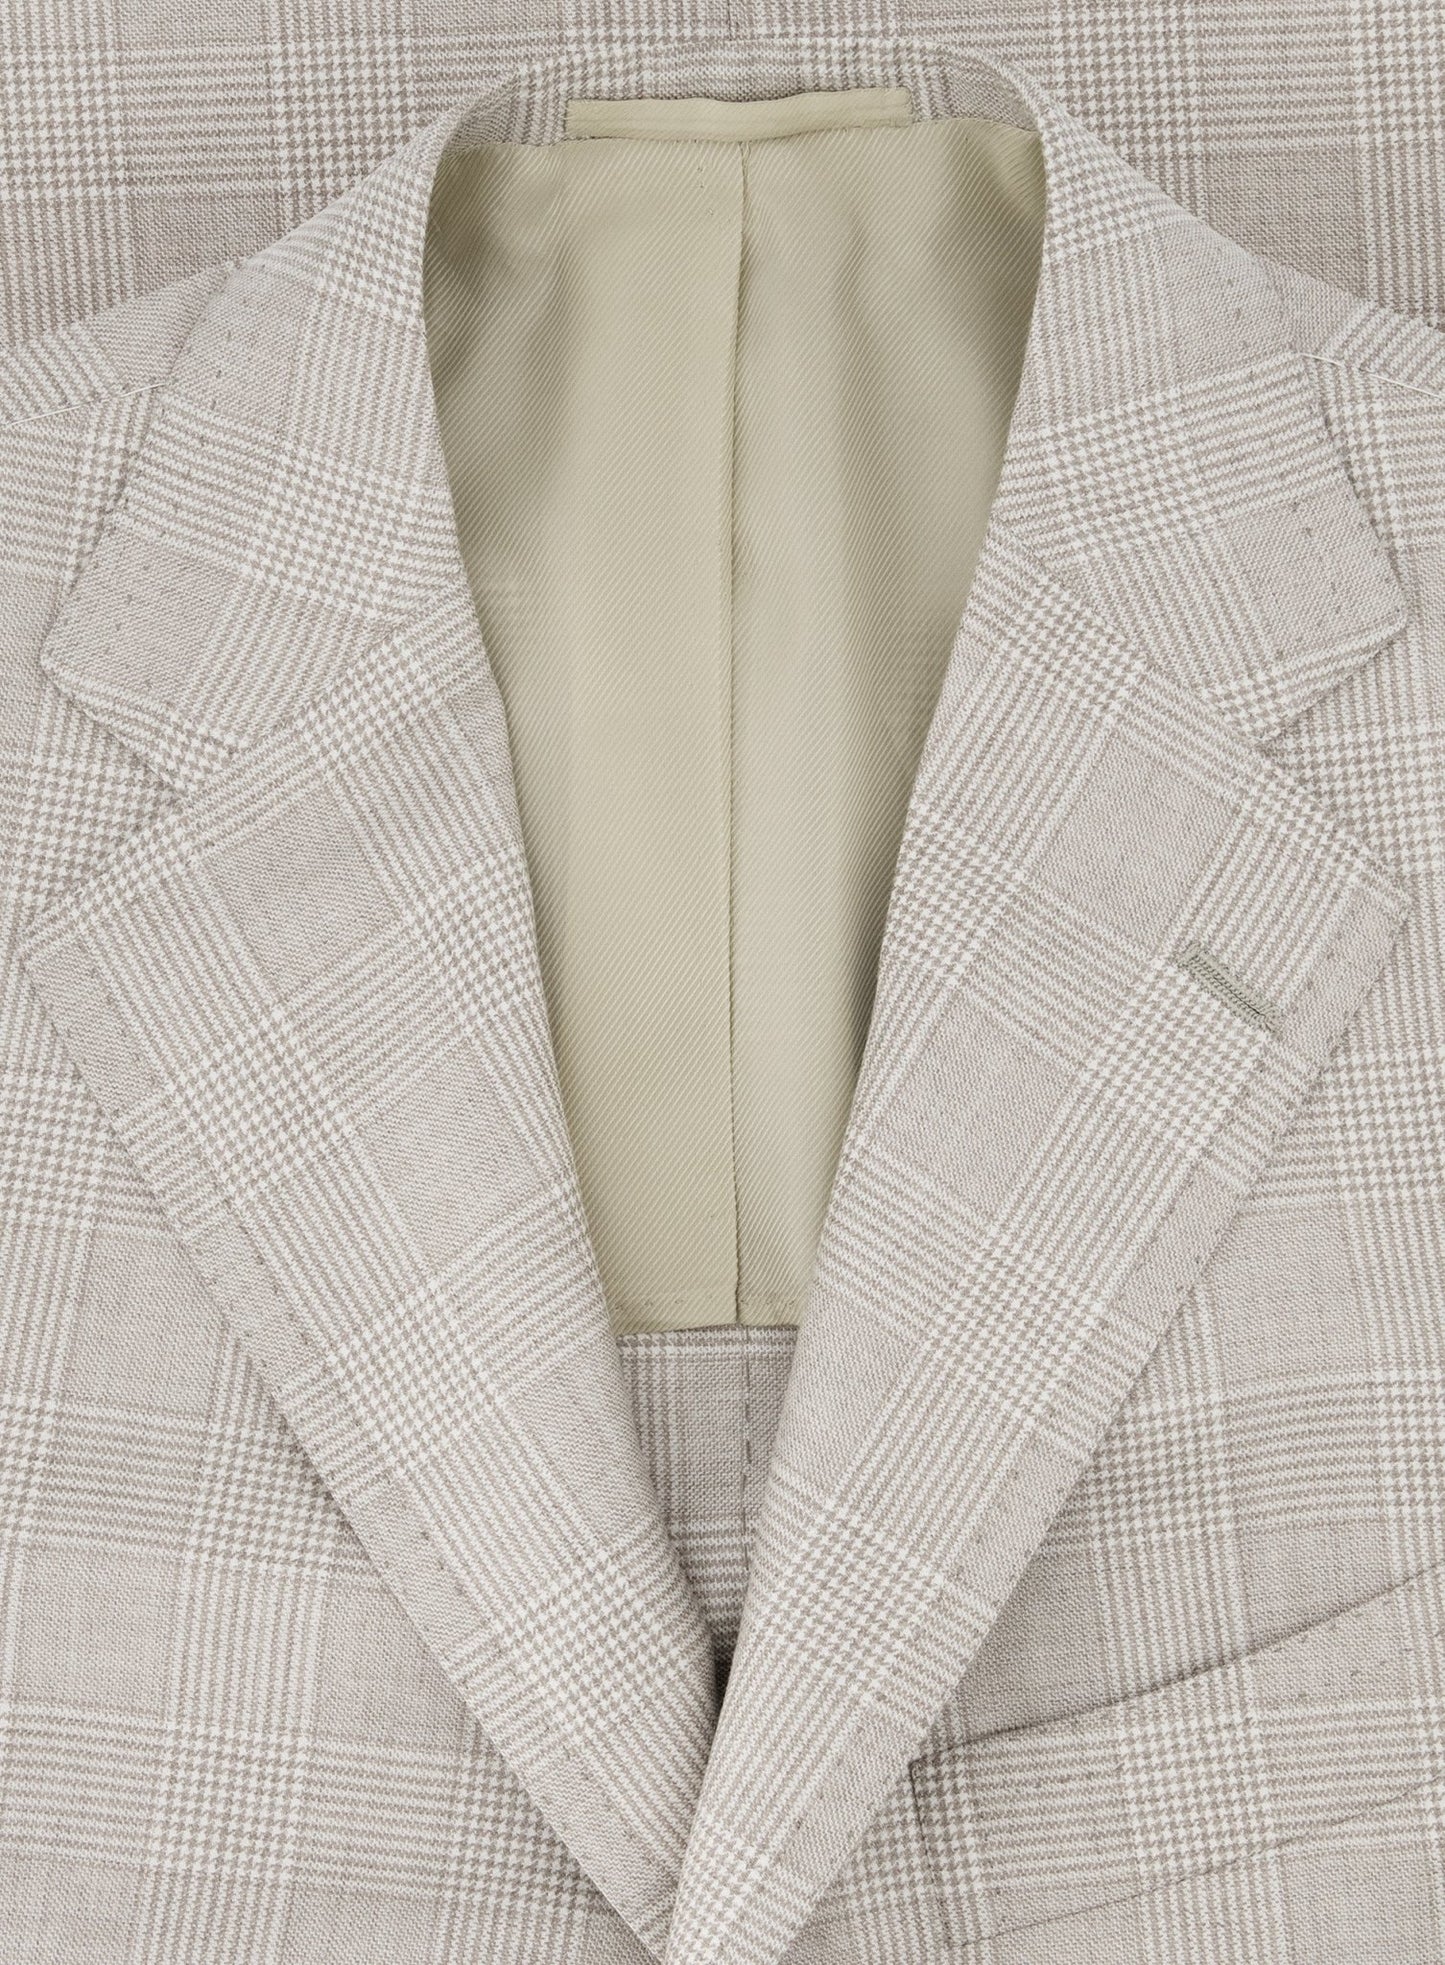 Handgemaakt glencheck jasje van cashmere | Beige